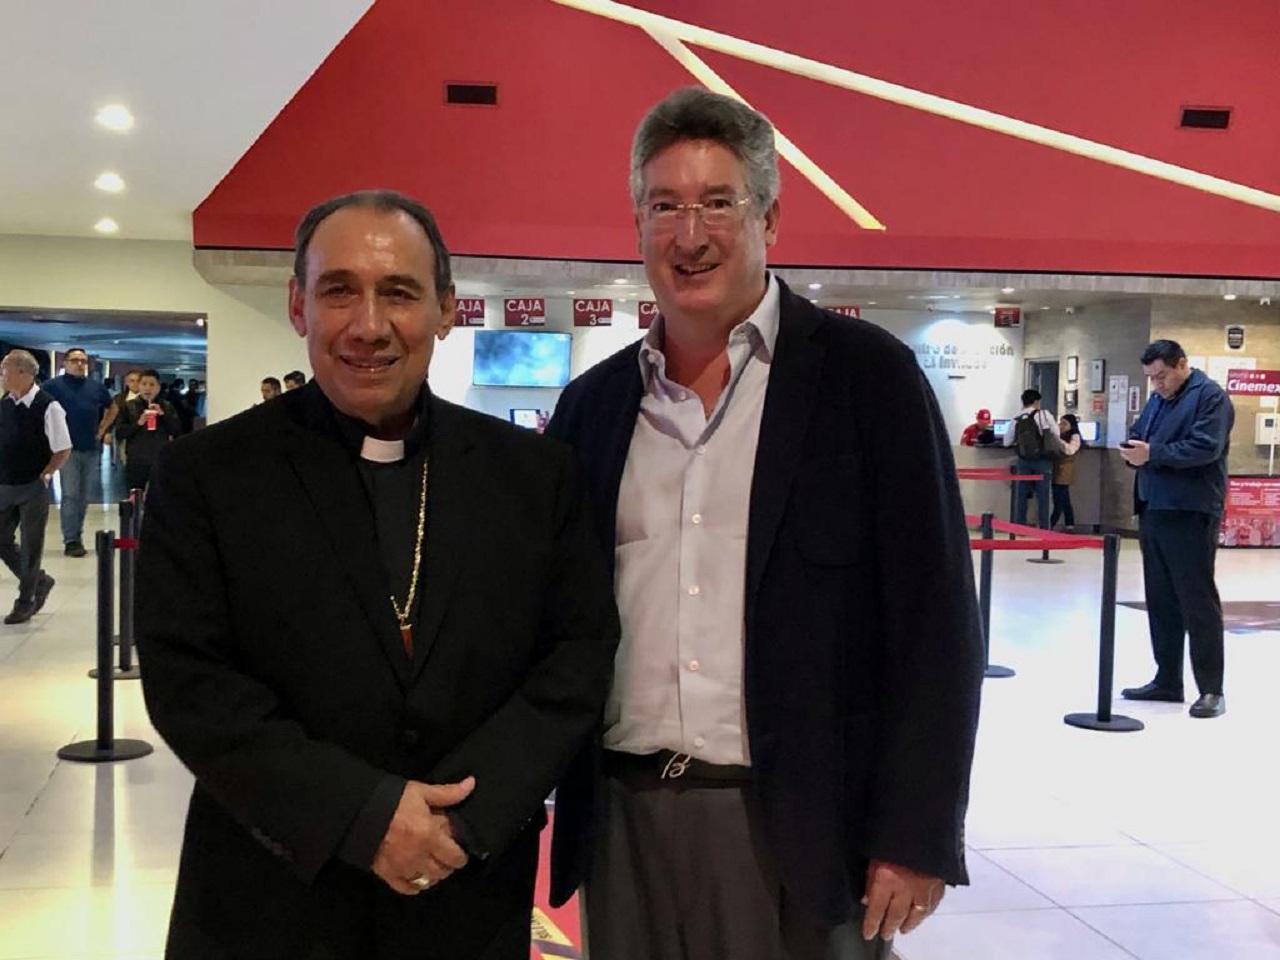 José Antonio Fernández Hurtado, arzobispo de Tlalnepantla, acude a función especial de la película “Max”.